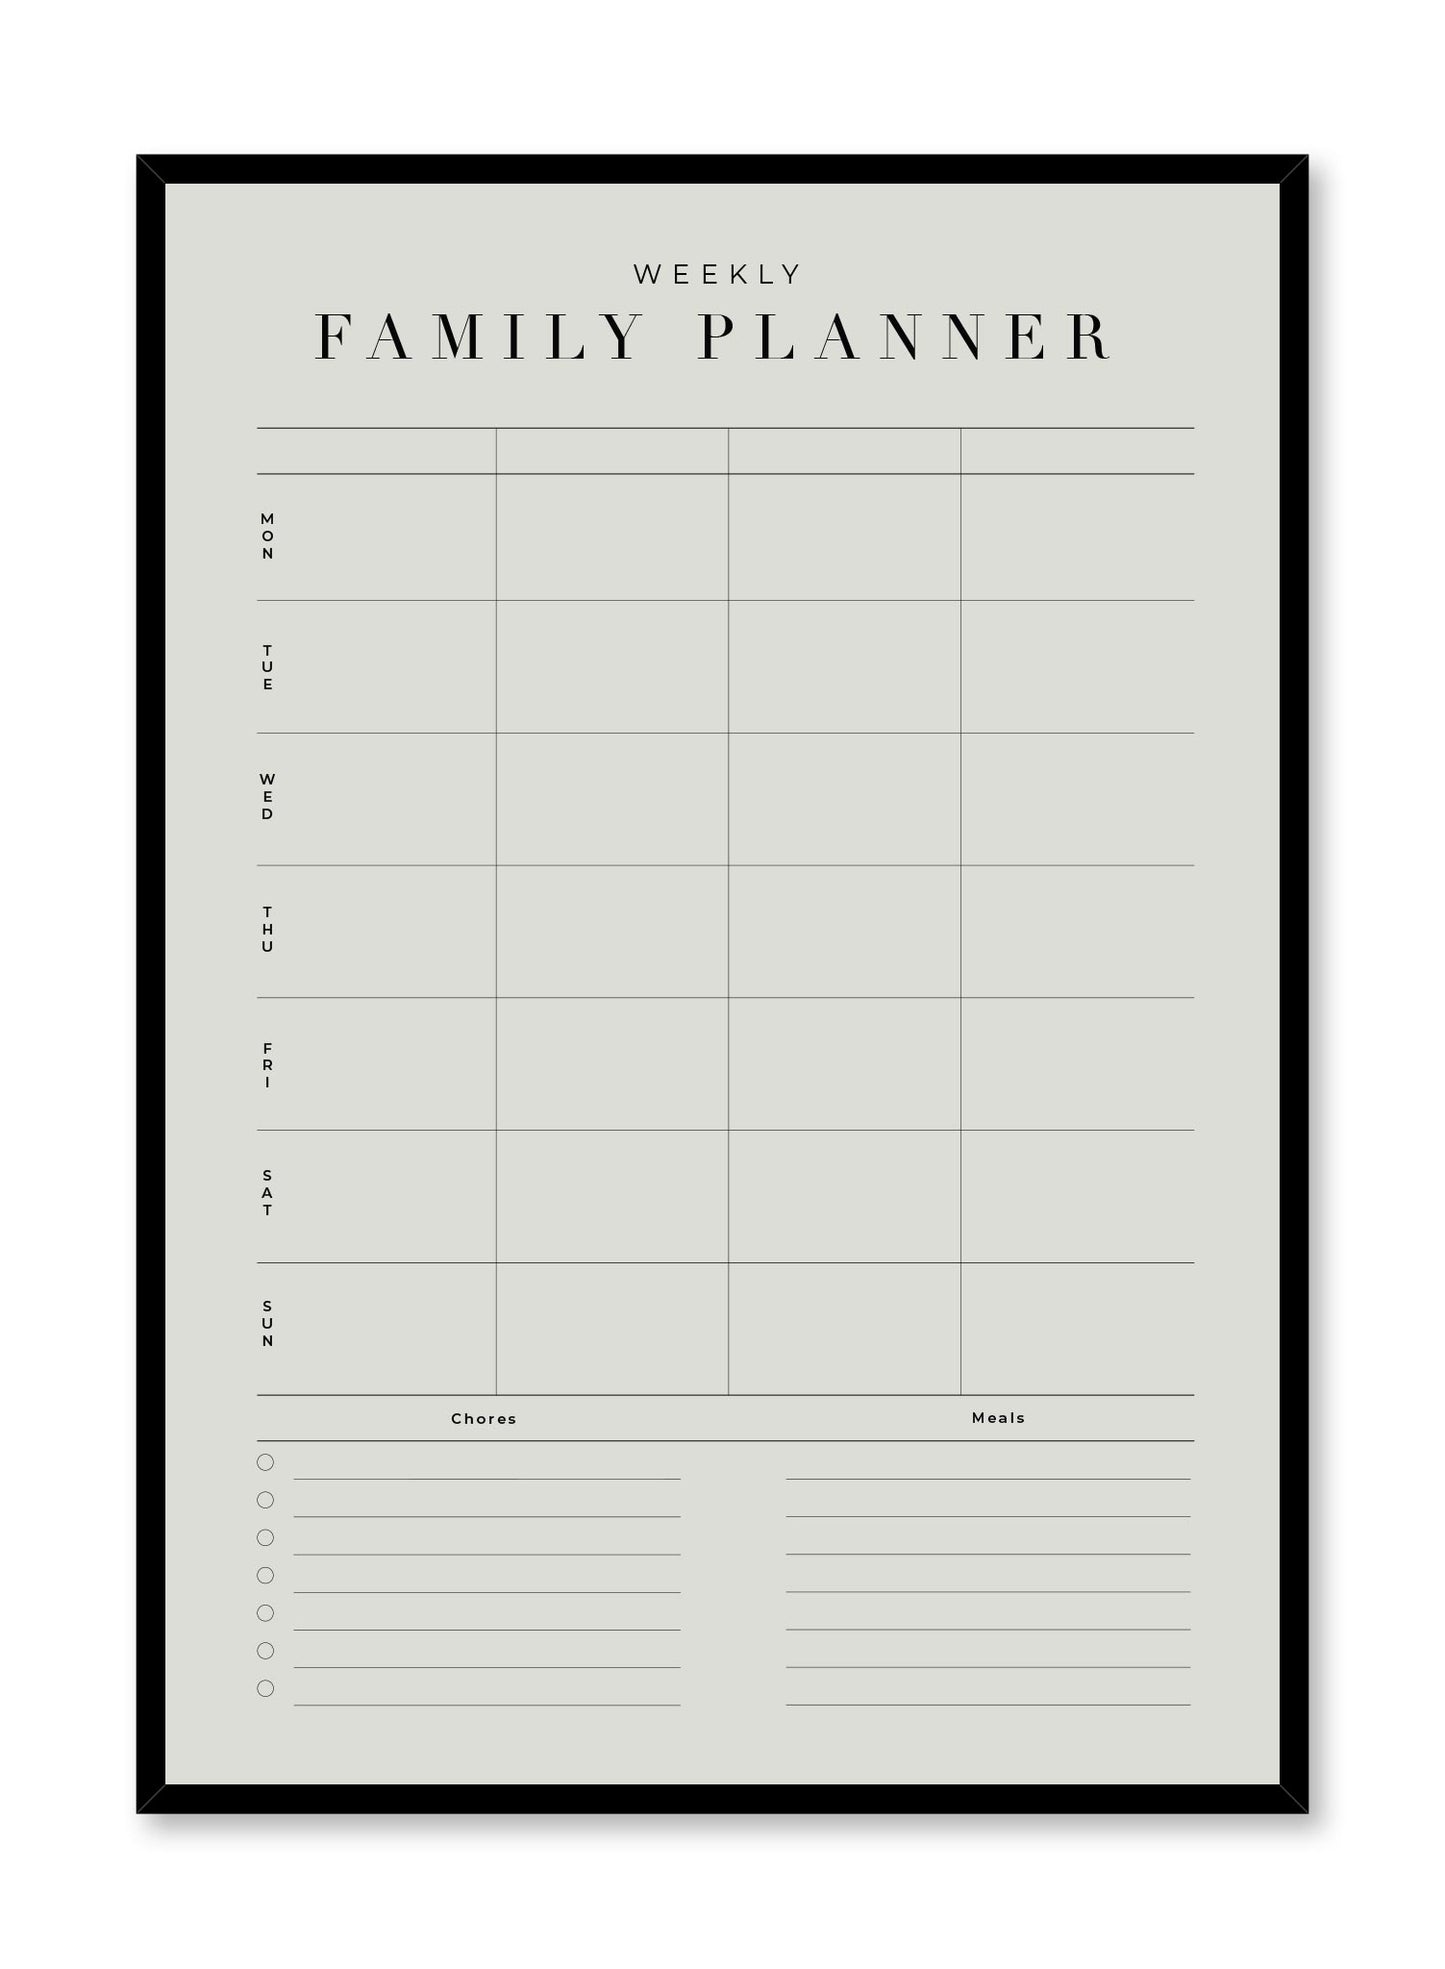 Agenda familial, Planificateur